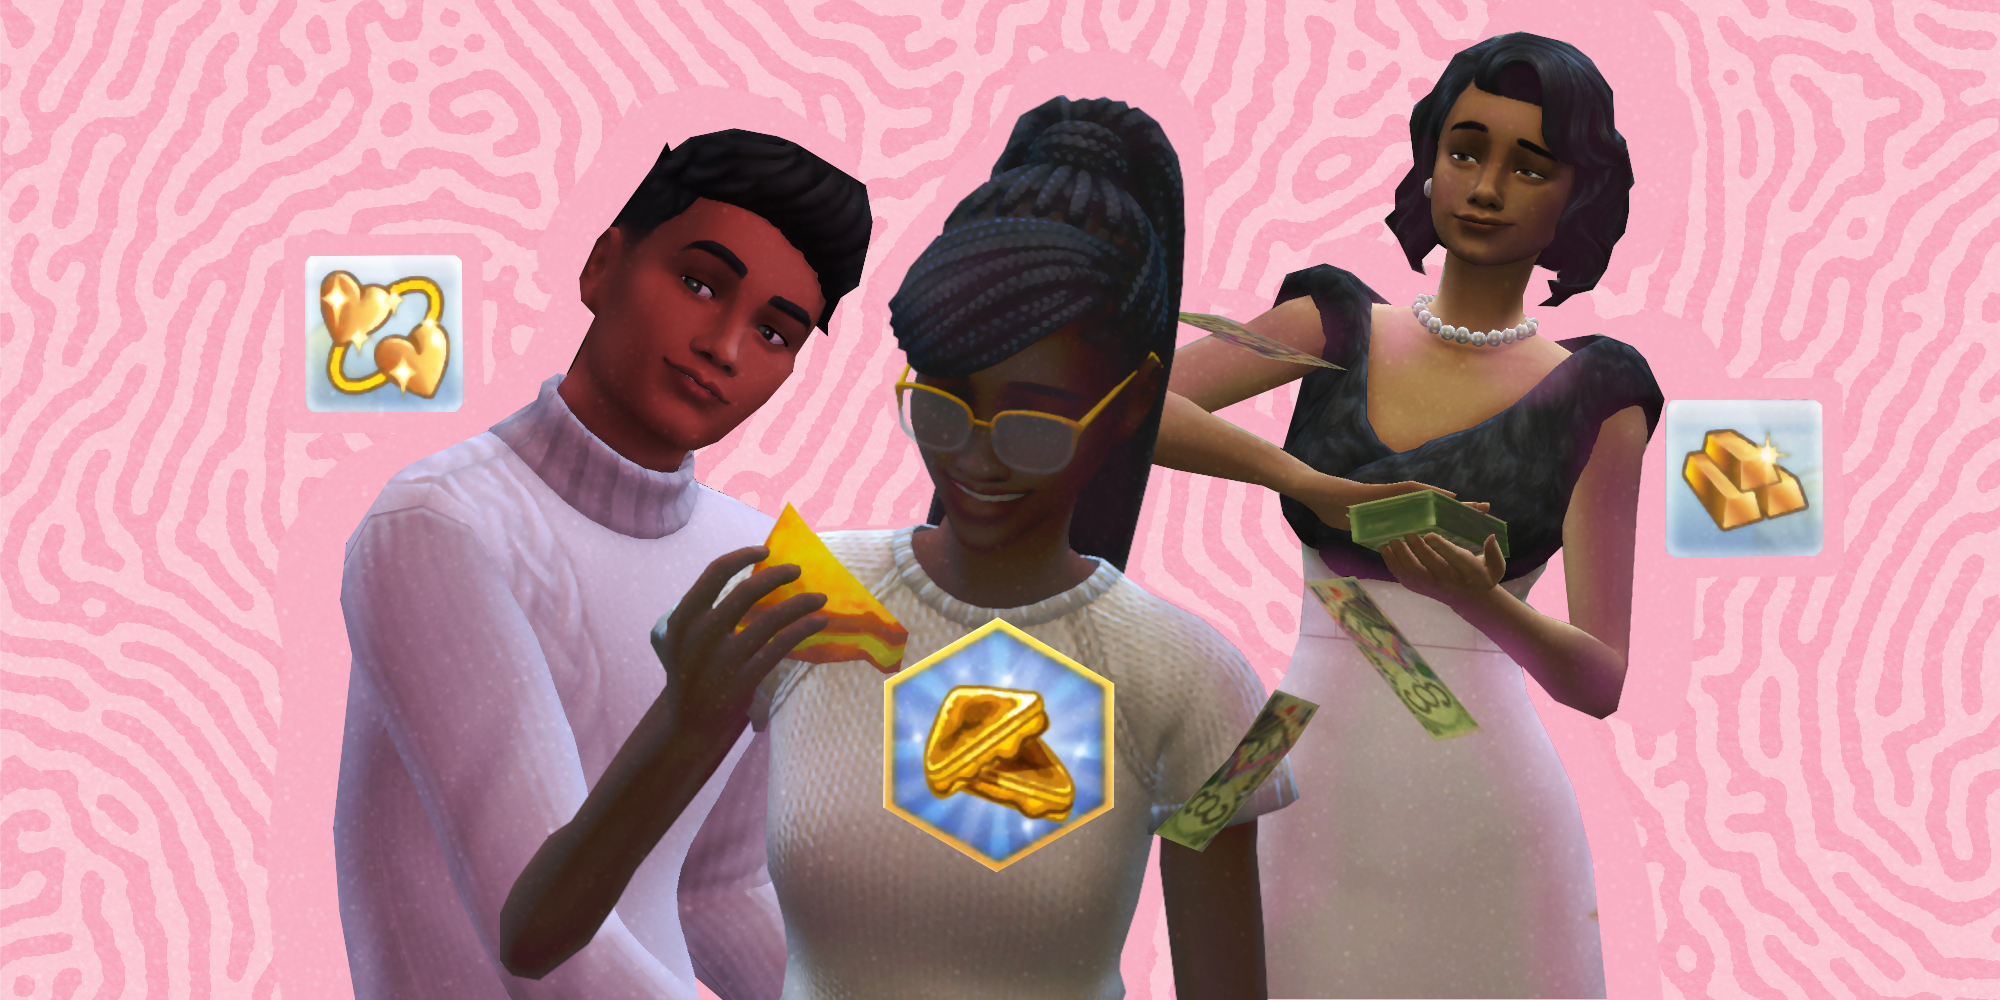 Drei Sims aus Die Sims 4 vor rosa Hintergrund.  Einer schaut nach links, einer isst gegrillten Käse und ein dritter wirft mit Simoleons.  Um sie herum schweben Aspirationssymbole